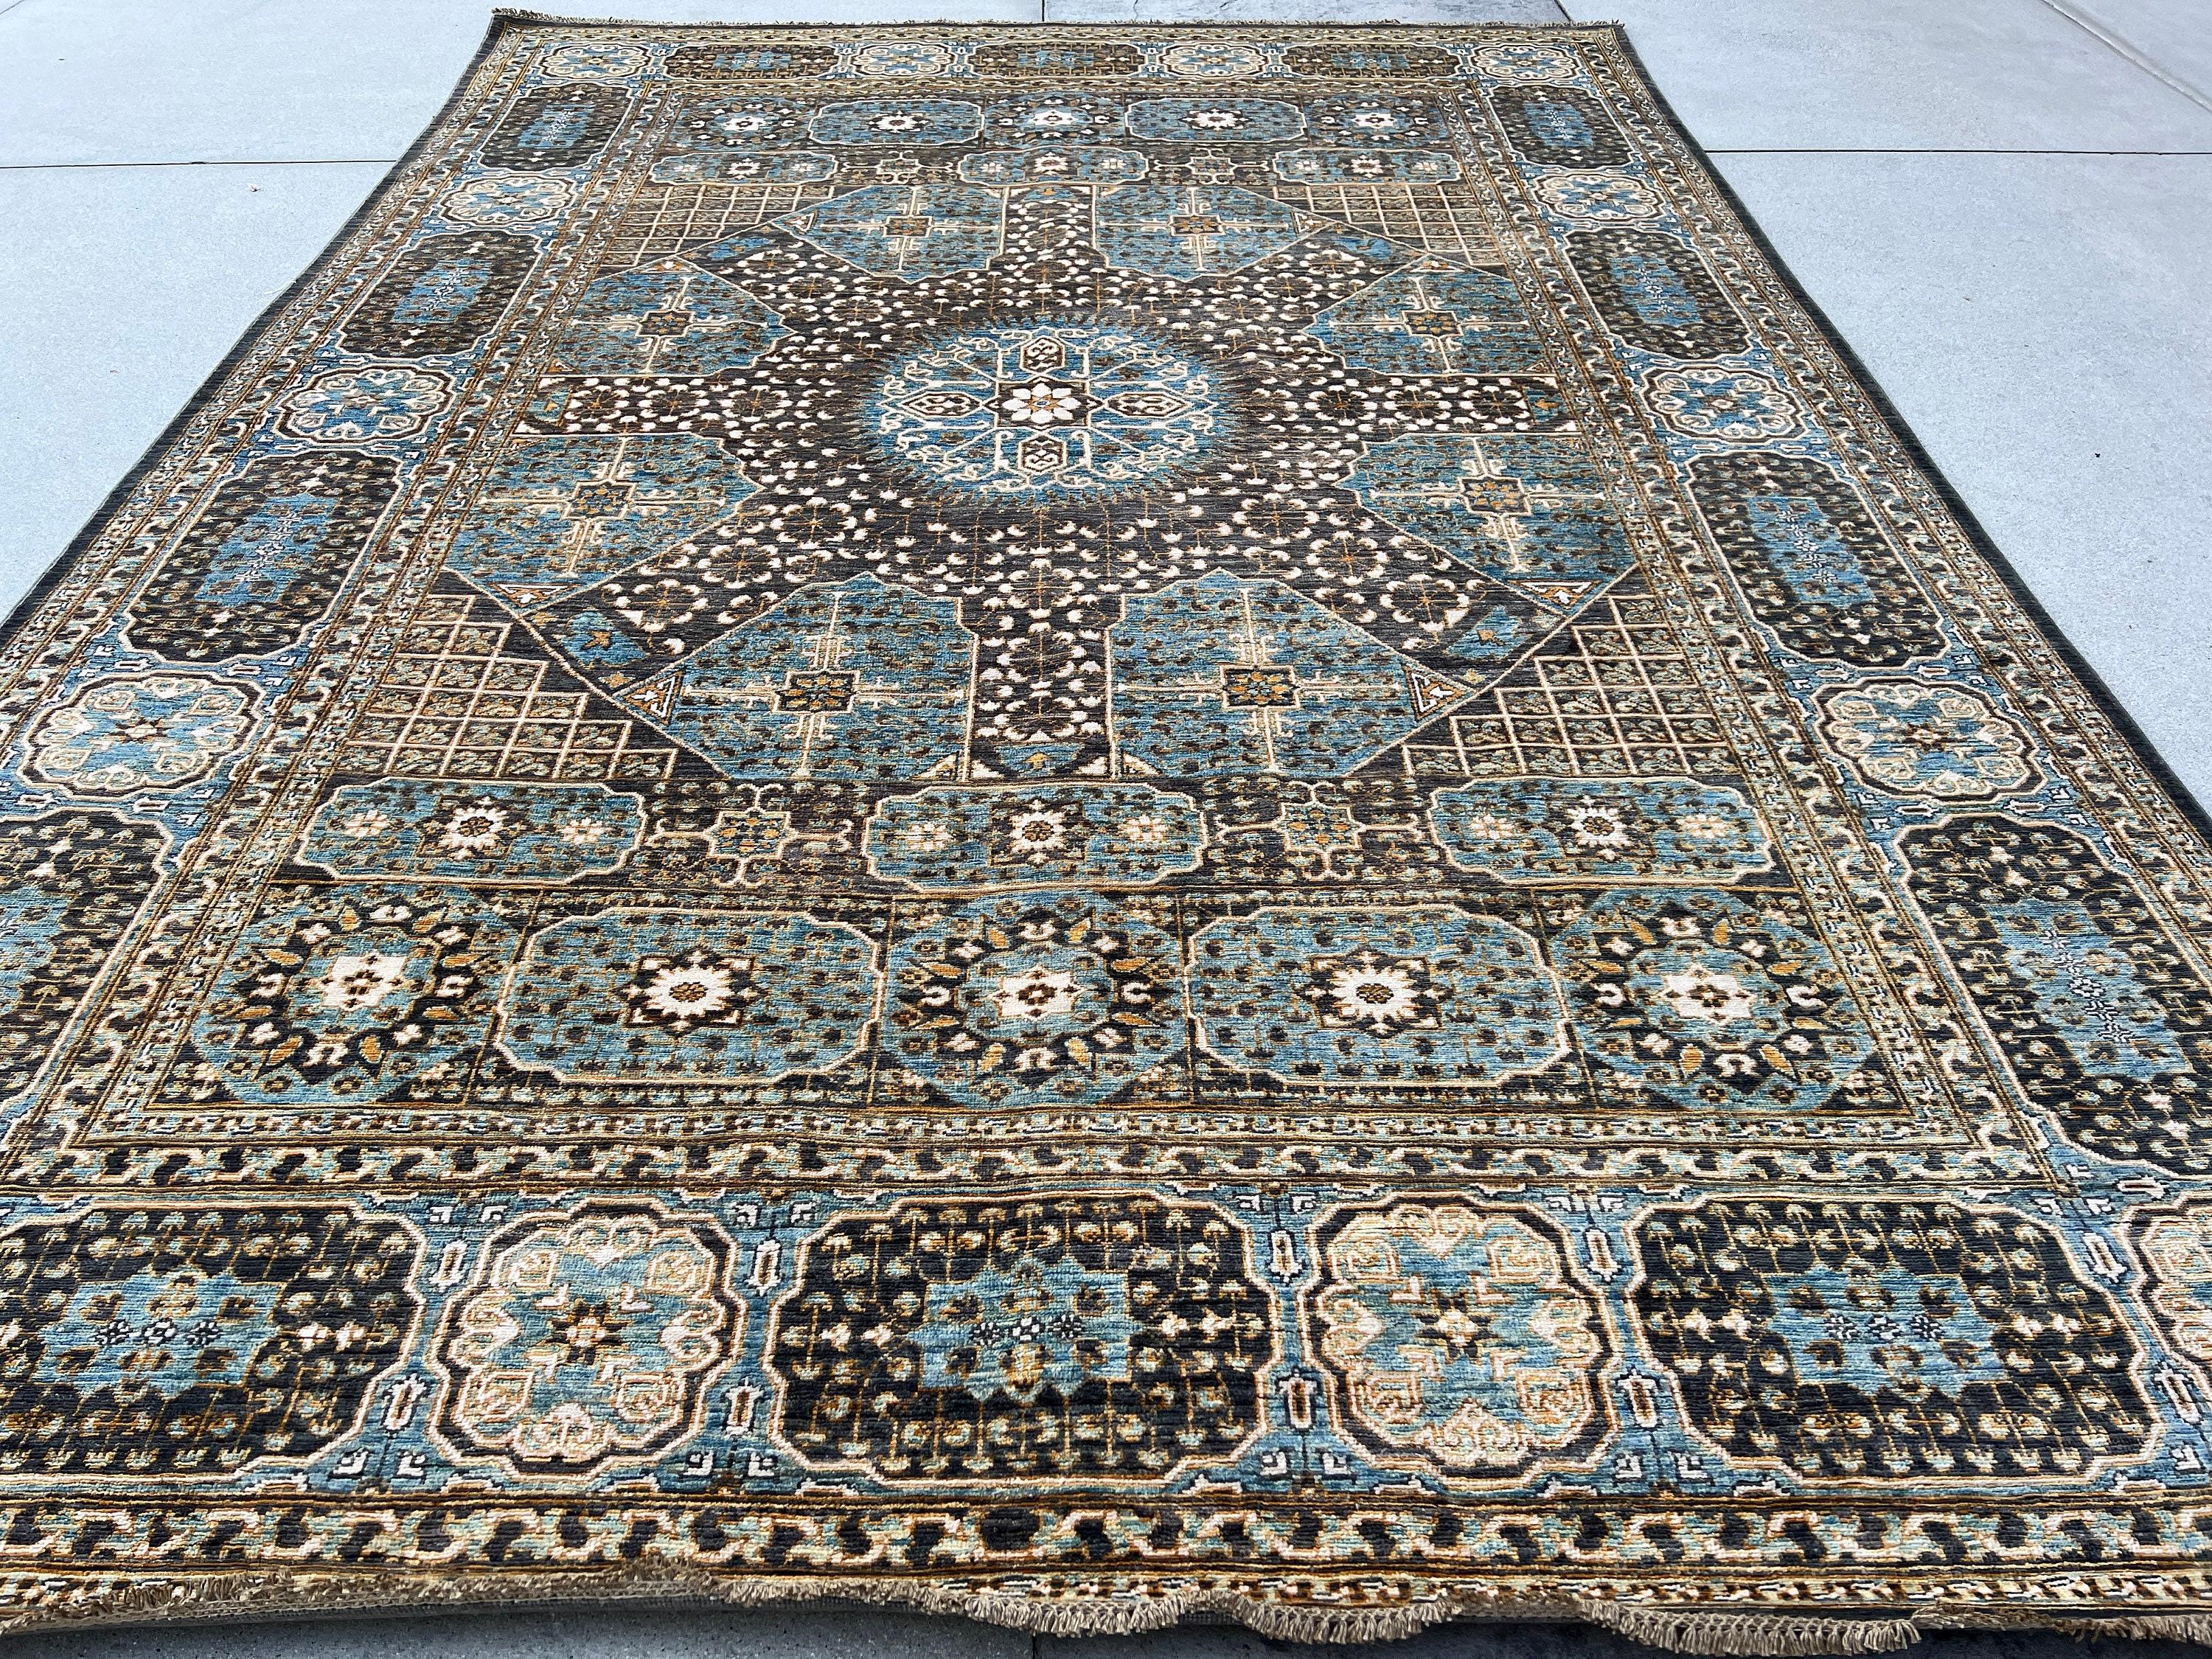 Ce tapis a été fabriqué avec 100% de laine Ghazni de première qualité, d'origine afghane, avec une base en coton. Les riches couleurs sont trempées dans des teintures naturelles pour créer une finition héritière qui ne déteint pas et qui est